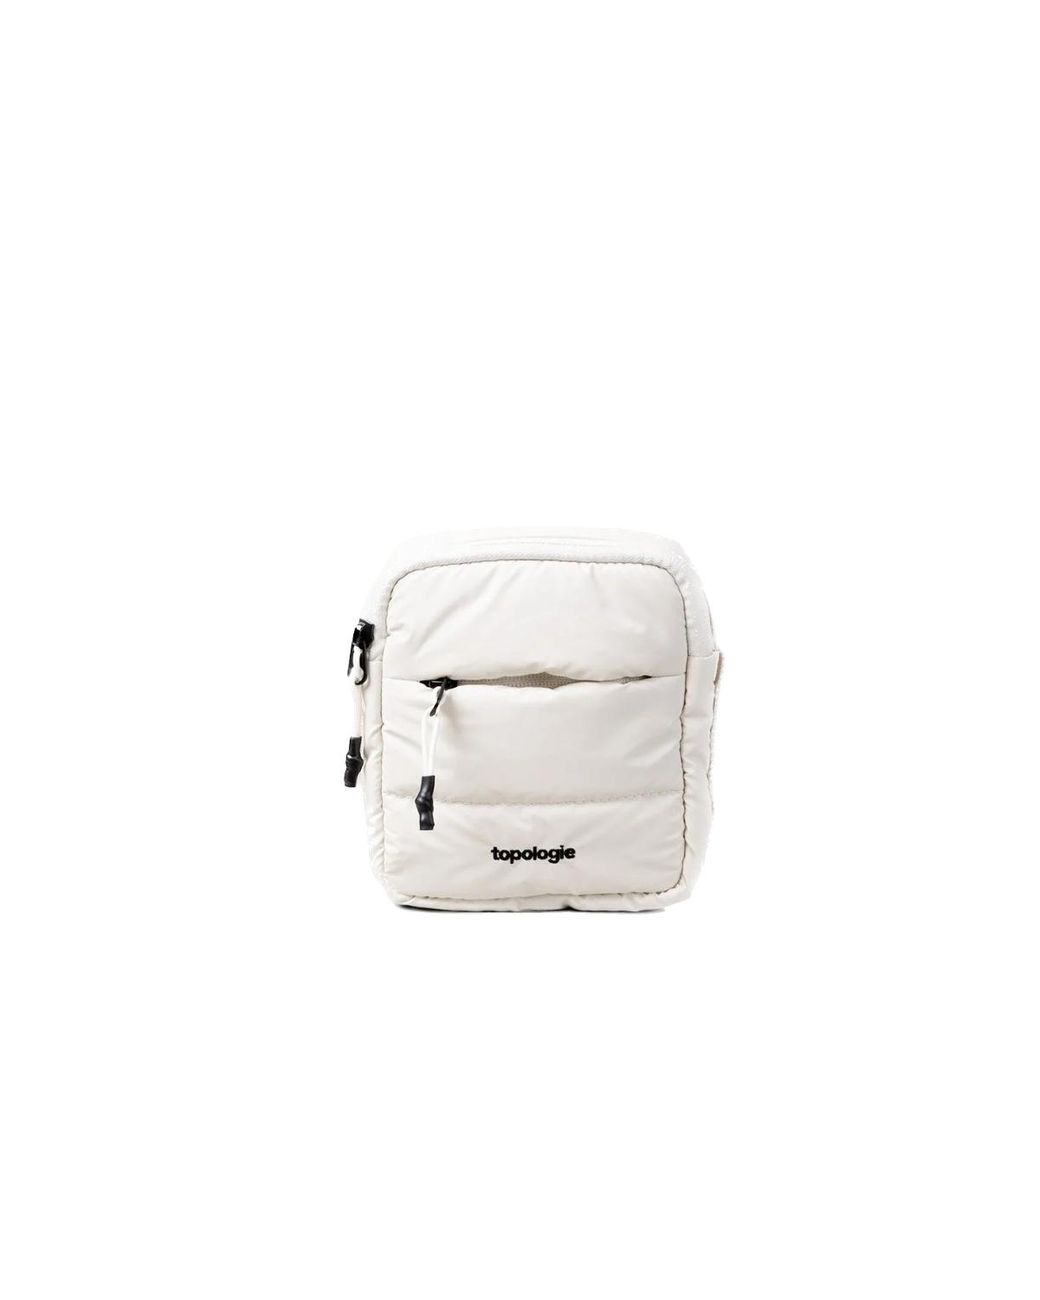 Supreme Nike Shoulder Bag Review & On-Body - Supreme Bag For Only $45? 